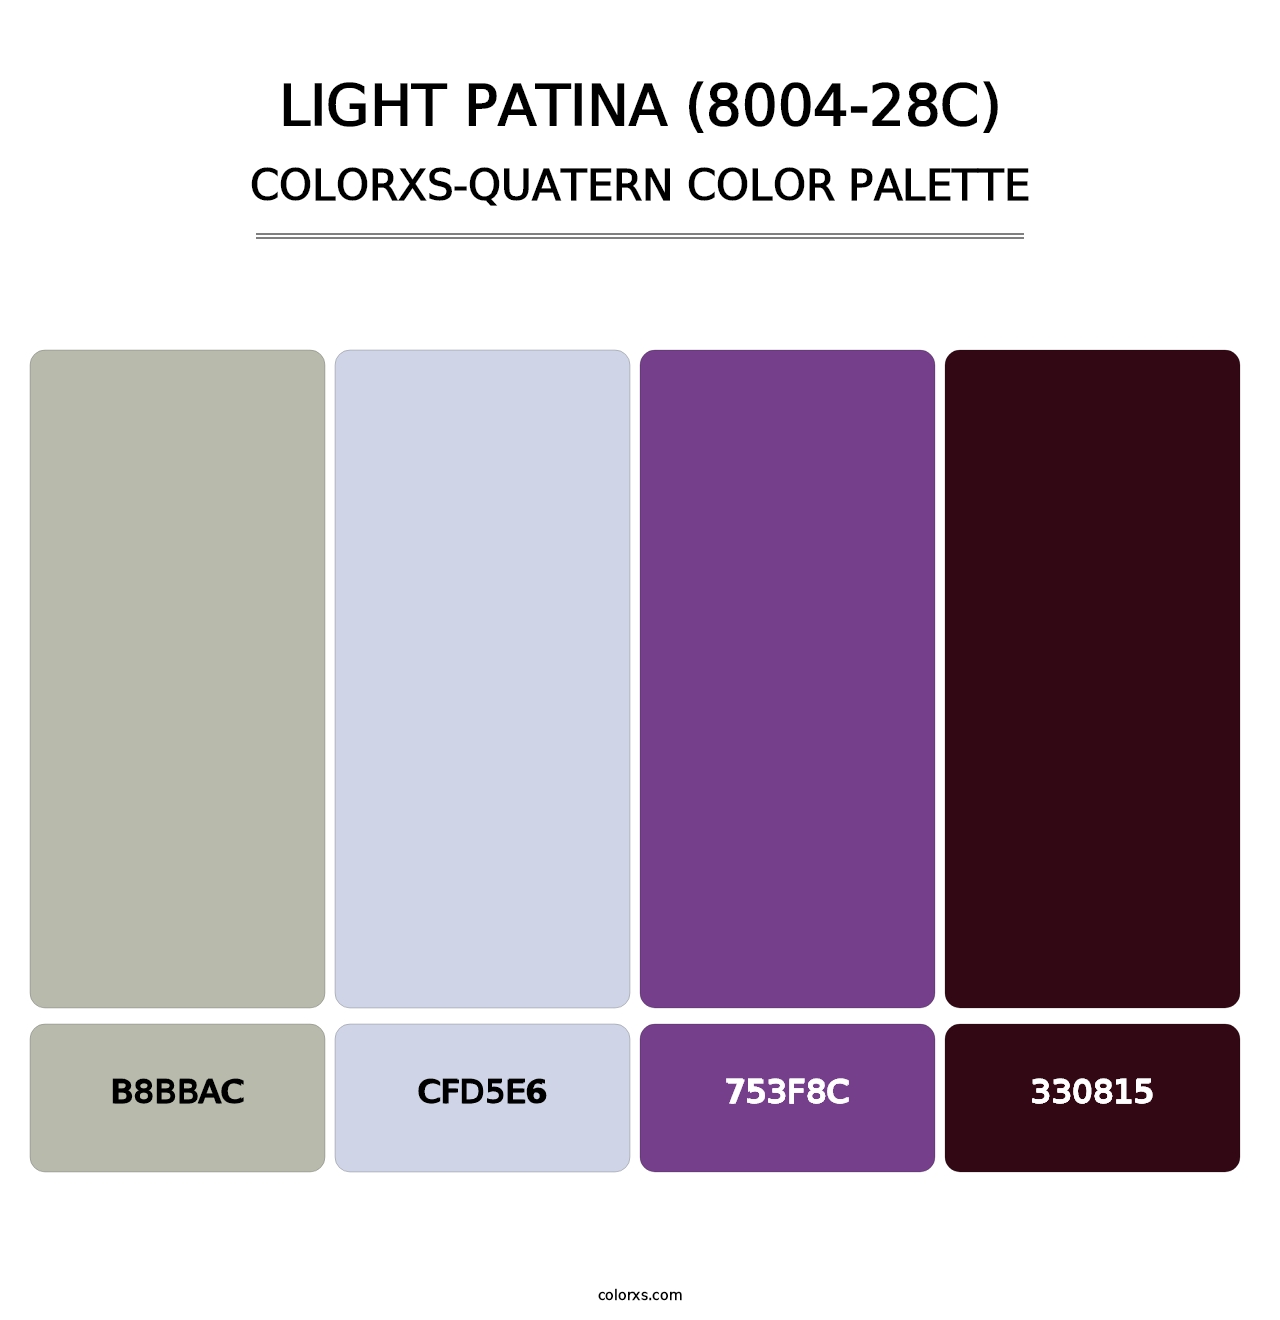 Light Patina (8004-28C) - Colorxs Quatern Palette